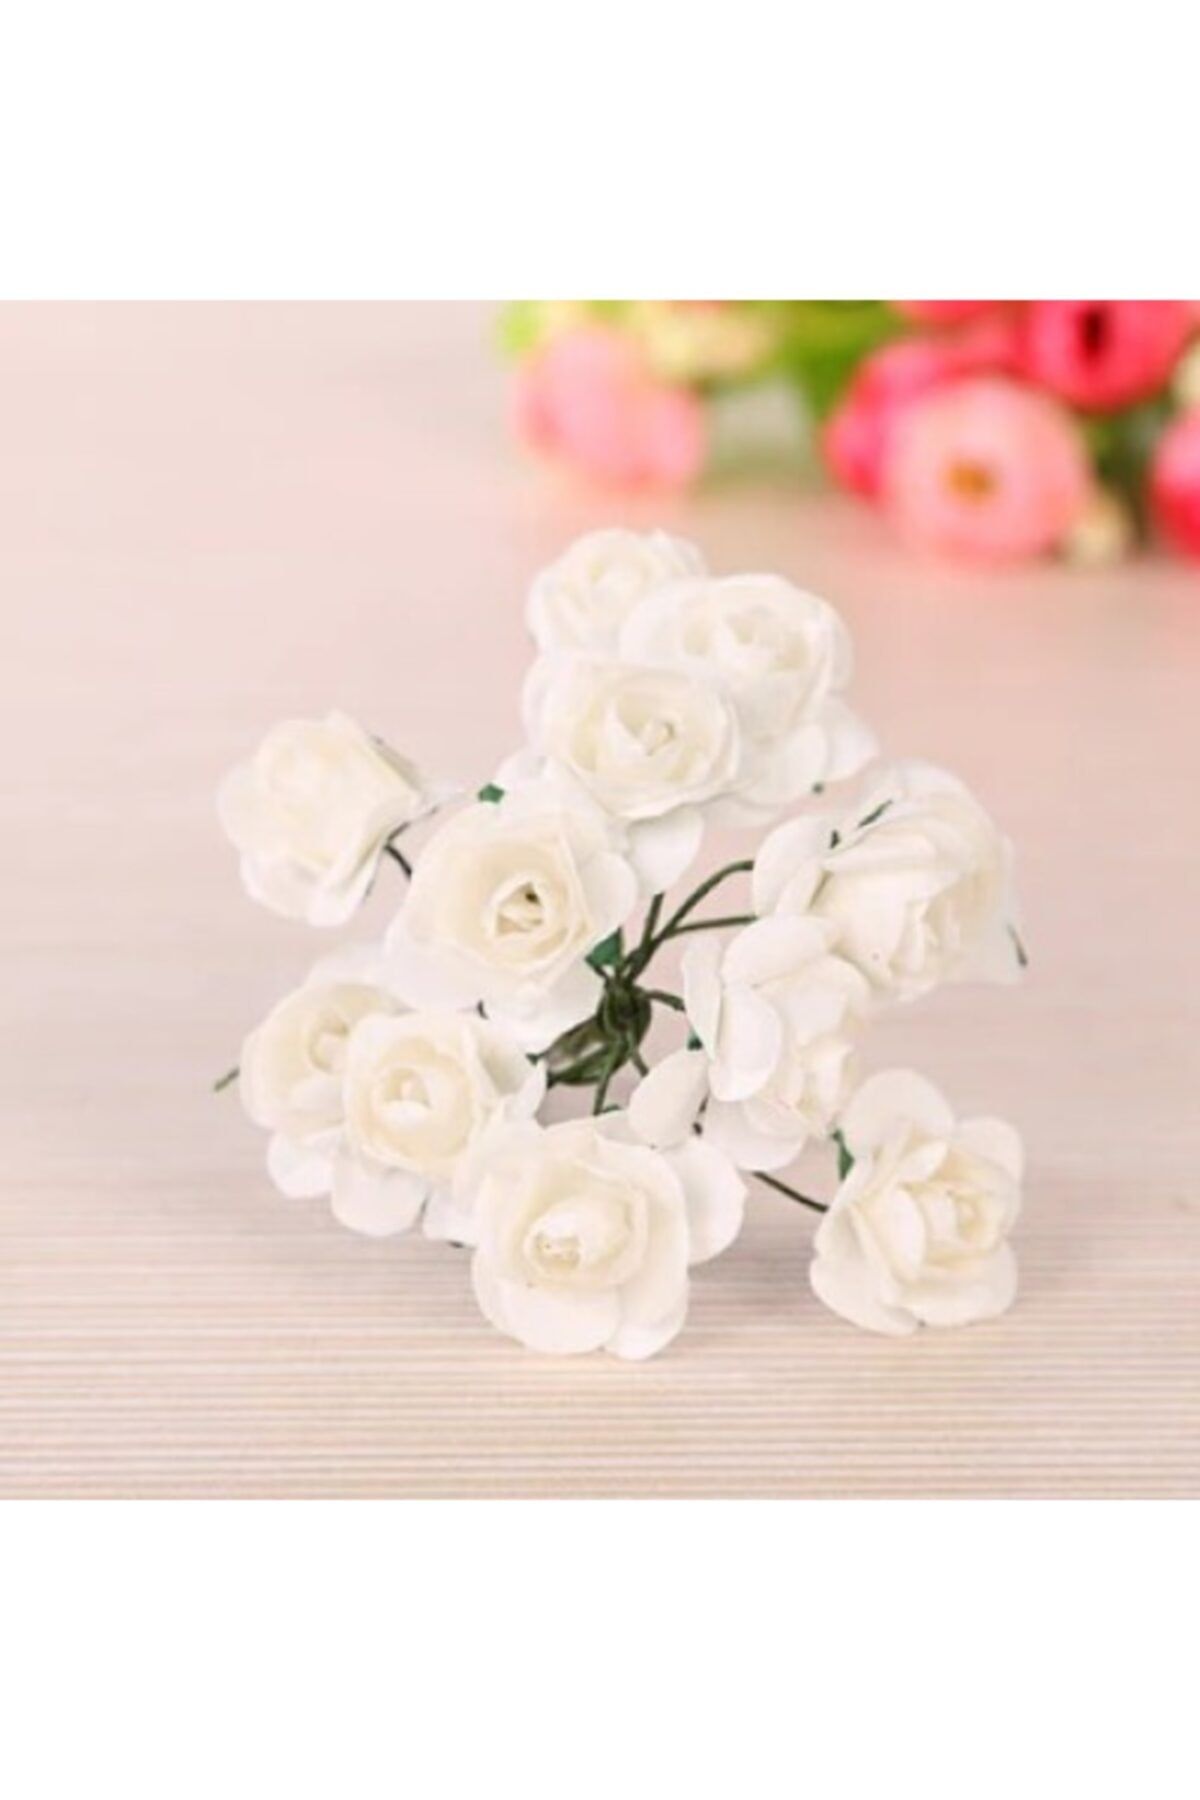 Aker Hediyelik Beyaz Kağıt Gül 144lü Kağıt Güller El Işi Süsleme Hobi Dekorasyon Tasarım Yapay Çiçek Aranjman